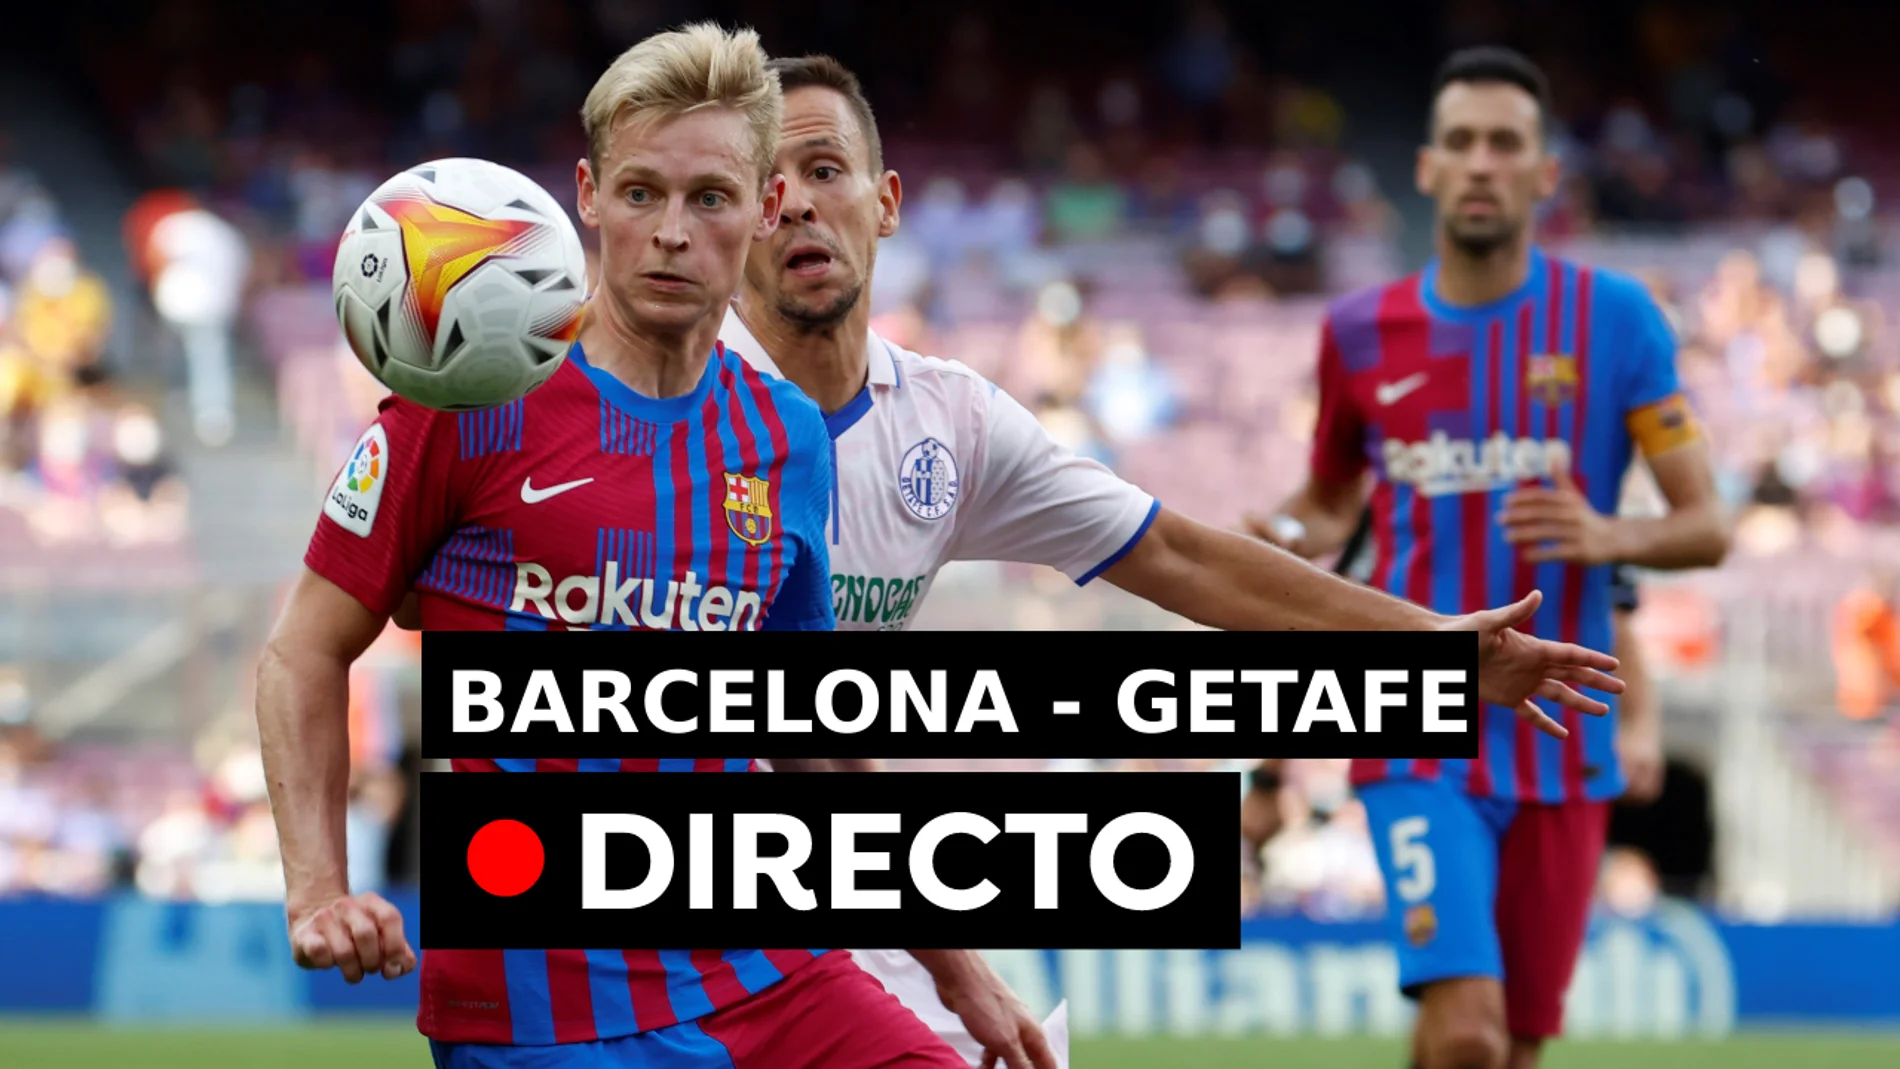 Nueva Zelanda papa Violeta Barcelona - Getafe: Resultado y goles de La Liga Santander hoy, en directo  (2-1)